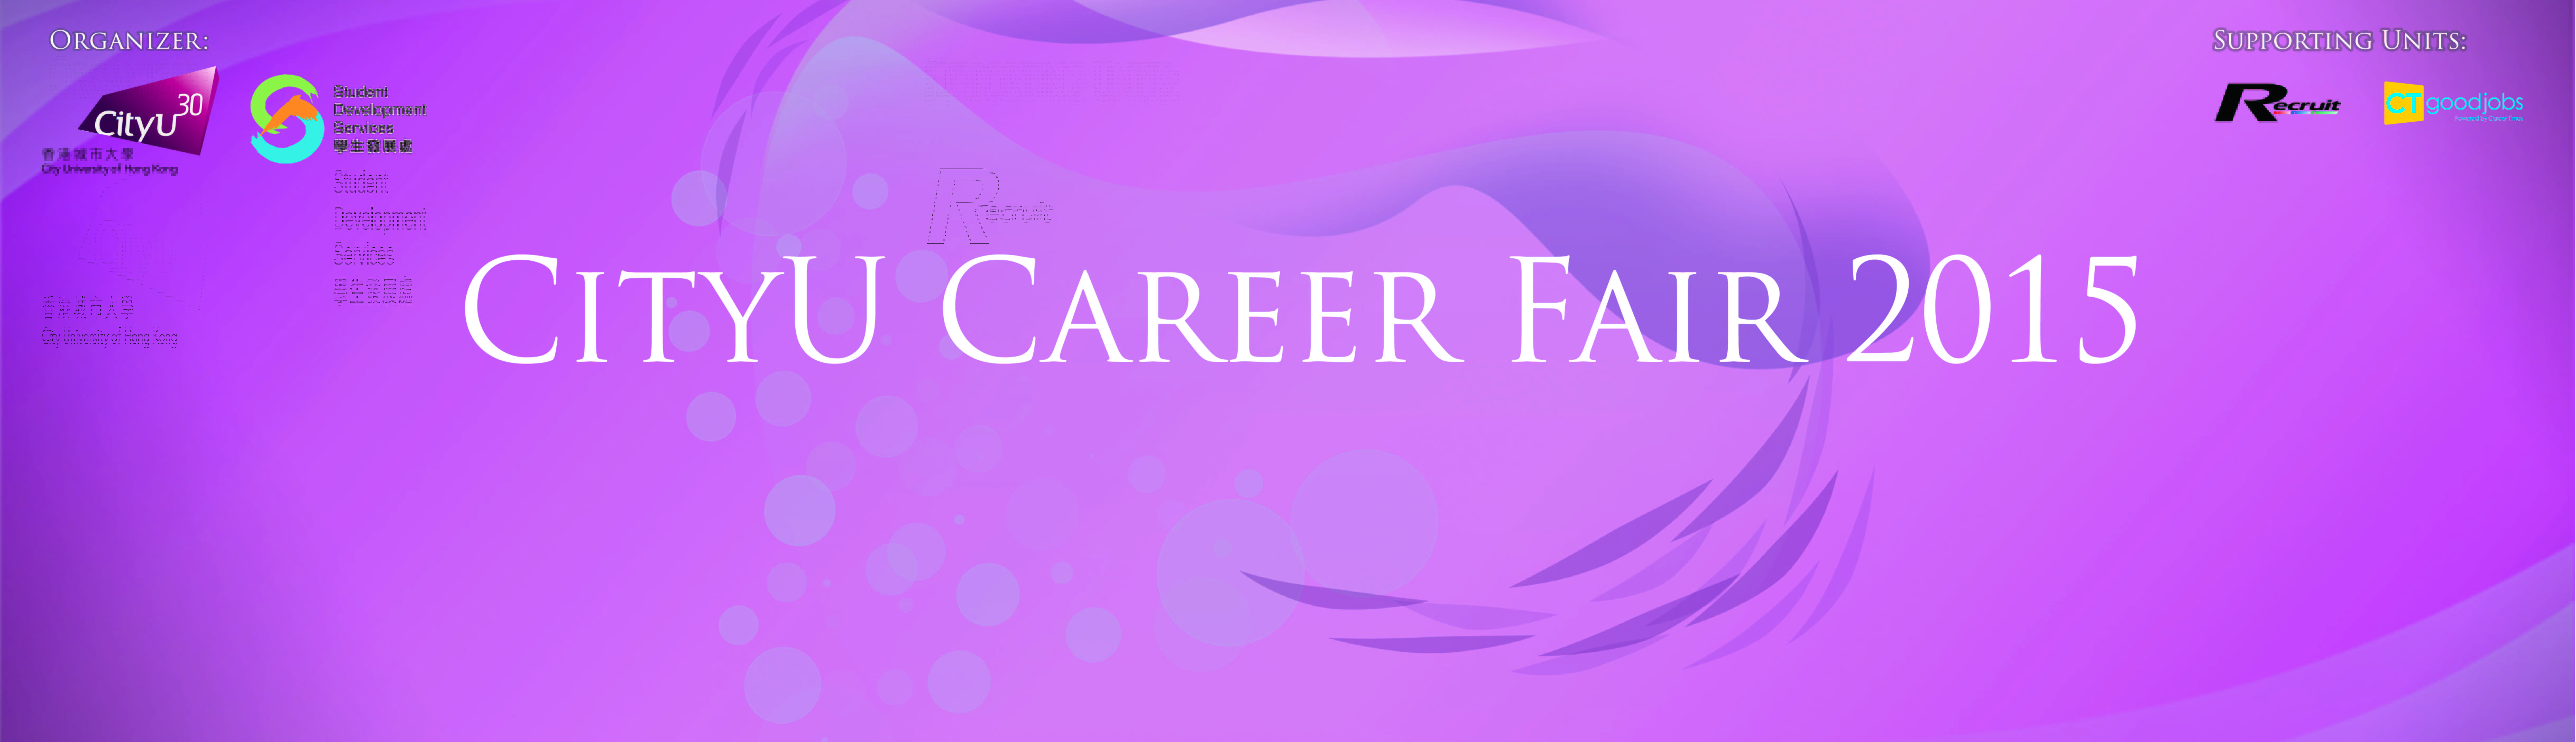 Career Fair 2015